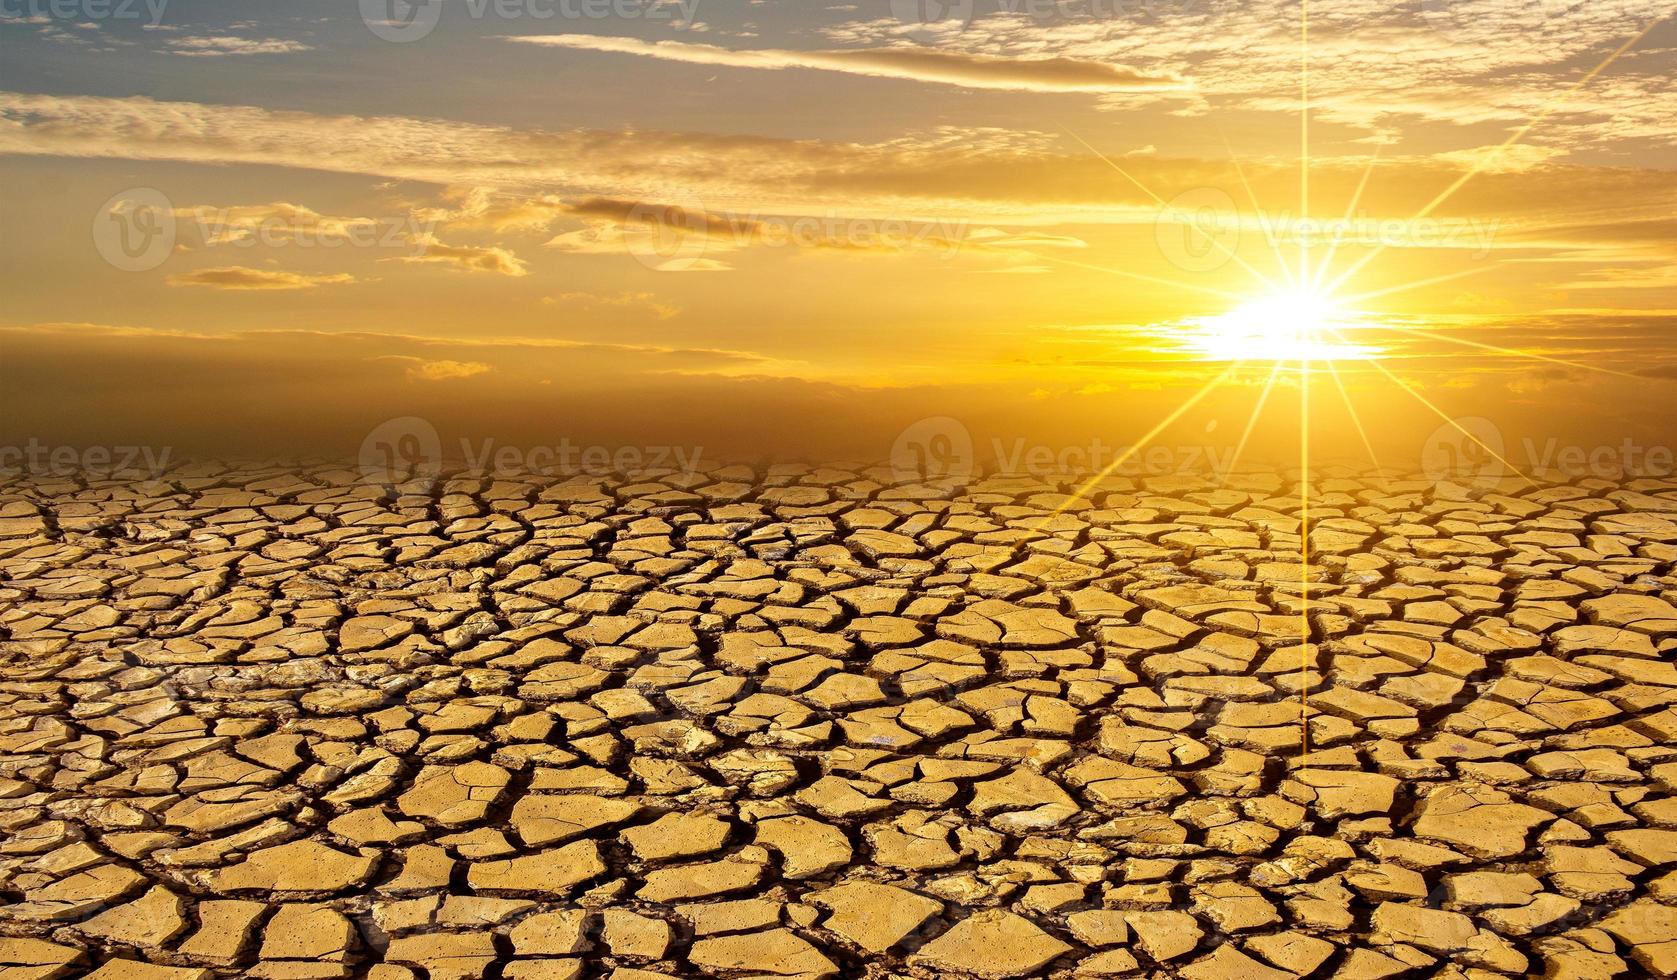 árido suelo arcilloso sol desierto gusano global concepto agrietado tierra quemada suelo sequía paisaje desértico espectacular puesta de sol foto